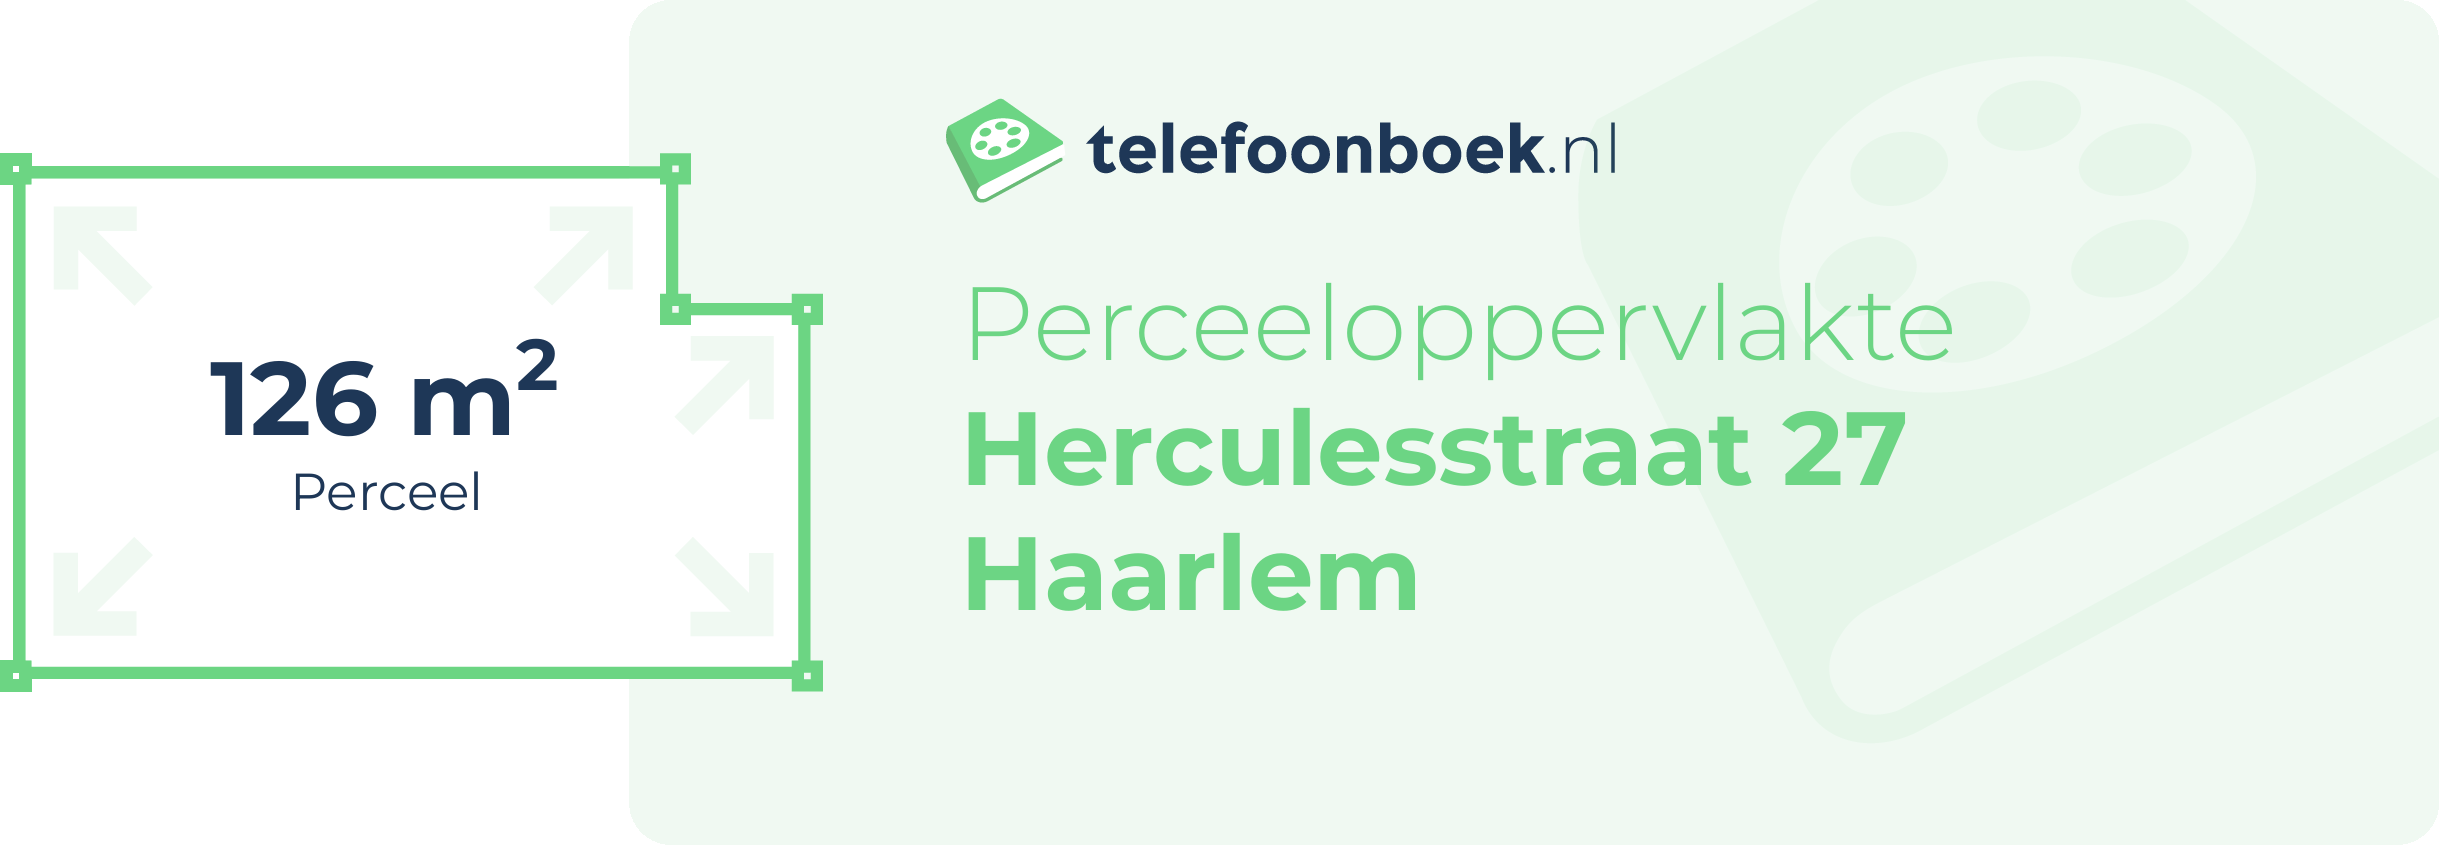 Perceeloppervlakte Herculesstraat 27 Haarlem